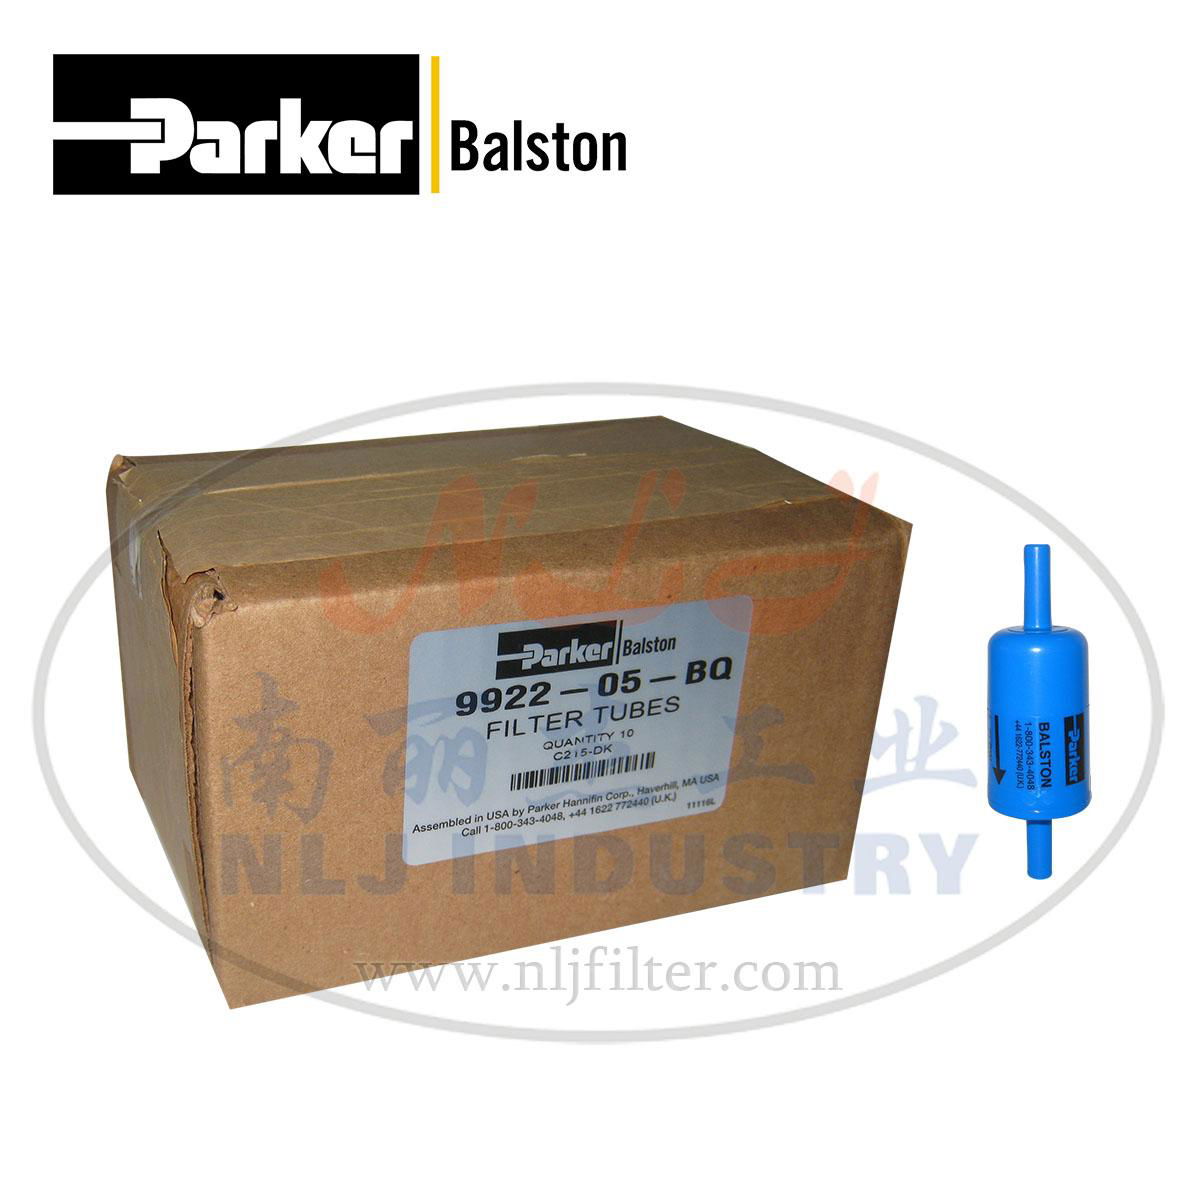 Parker(派克)Balston過濾器9922-05-BQ 5